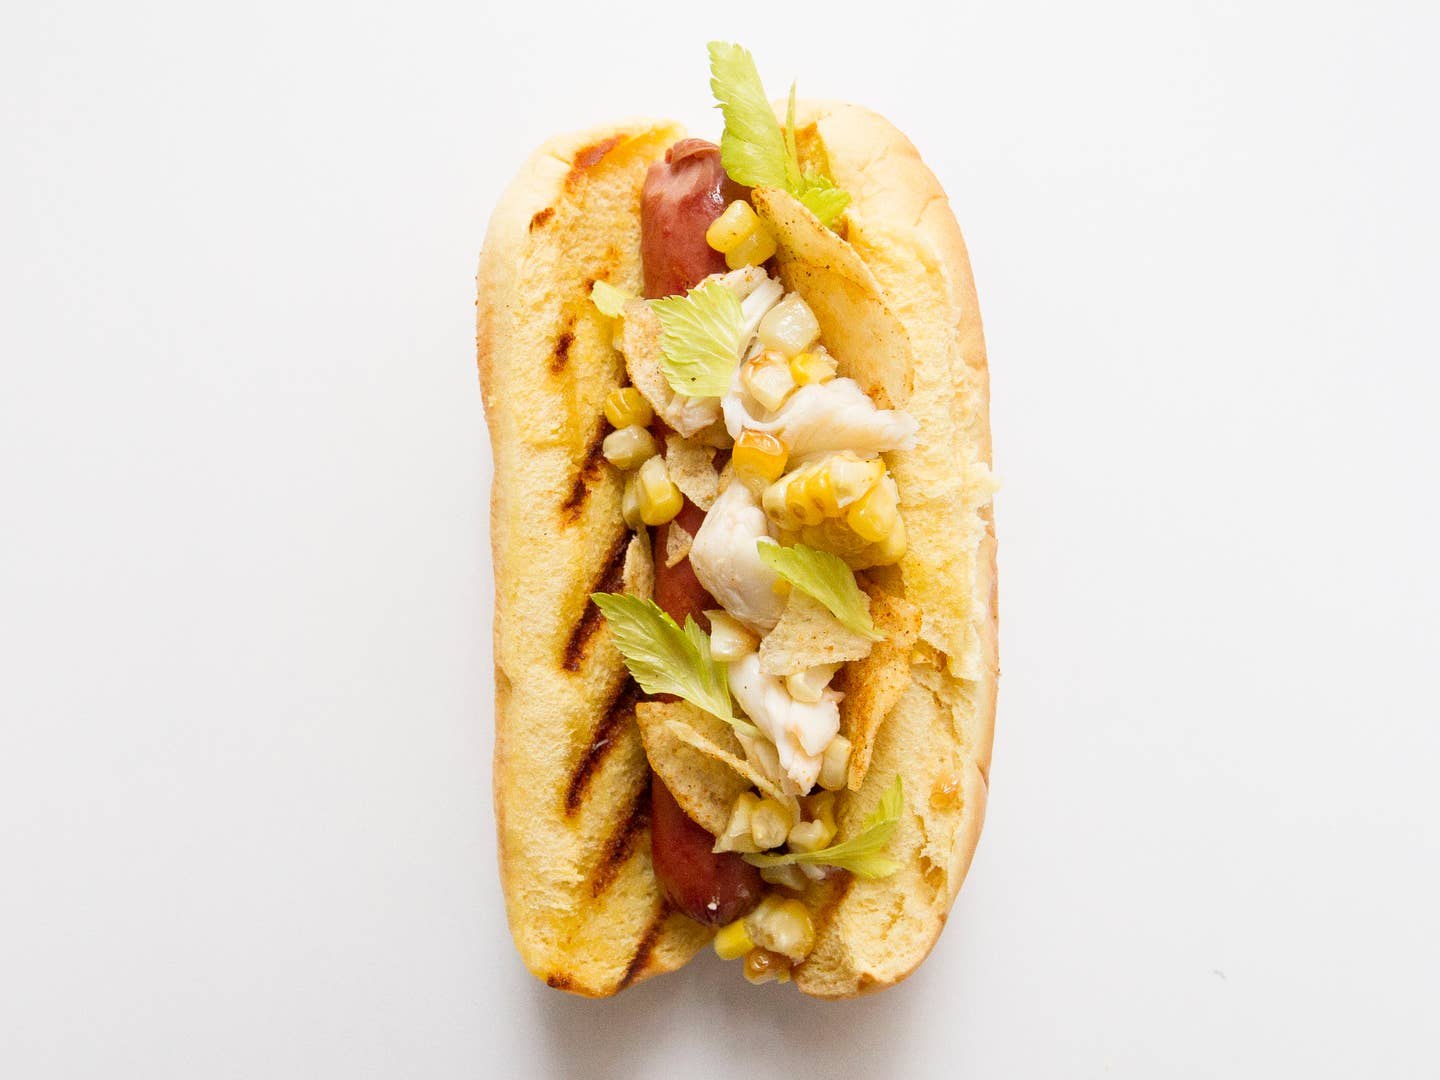 Maryland Hot Dog